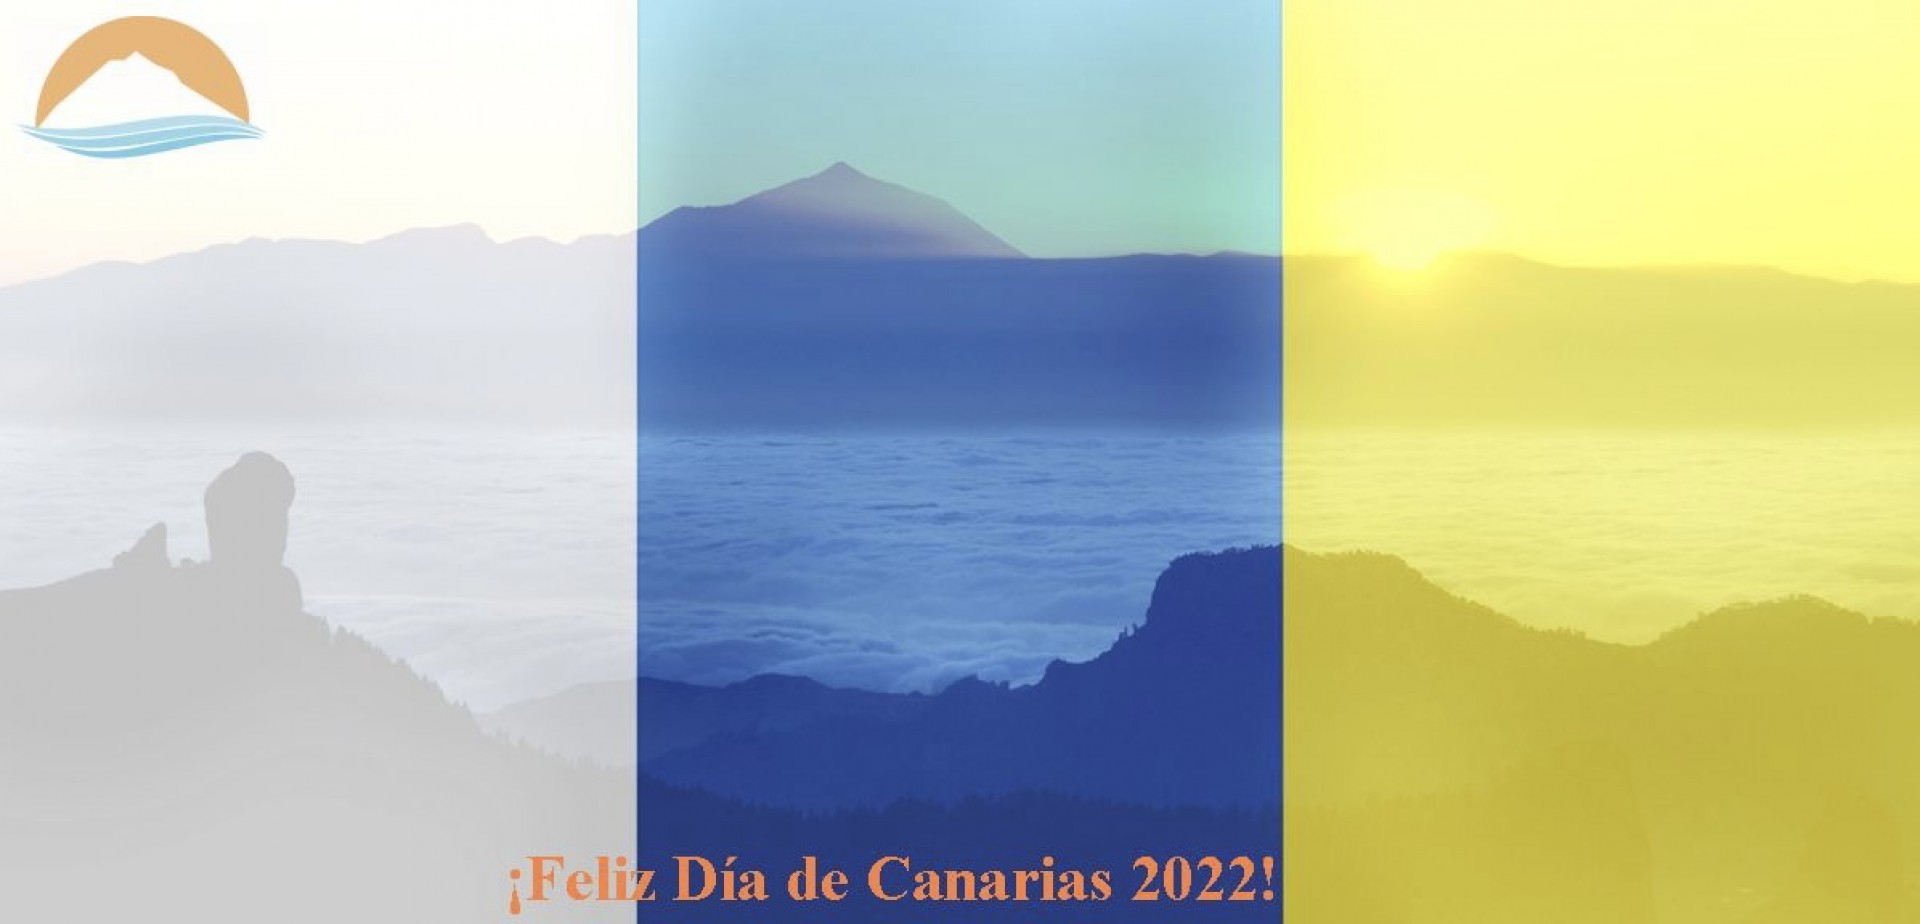 Vintersol les desea Feliz Día de Canarias 2022